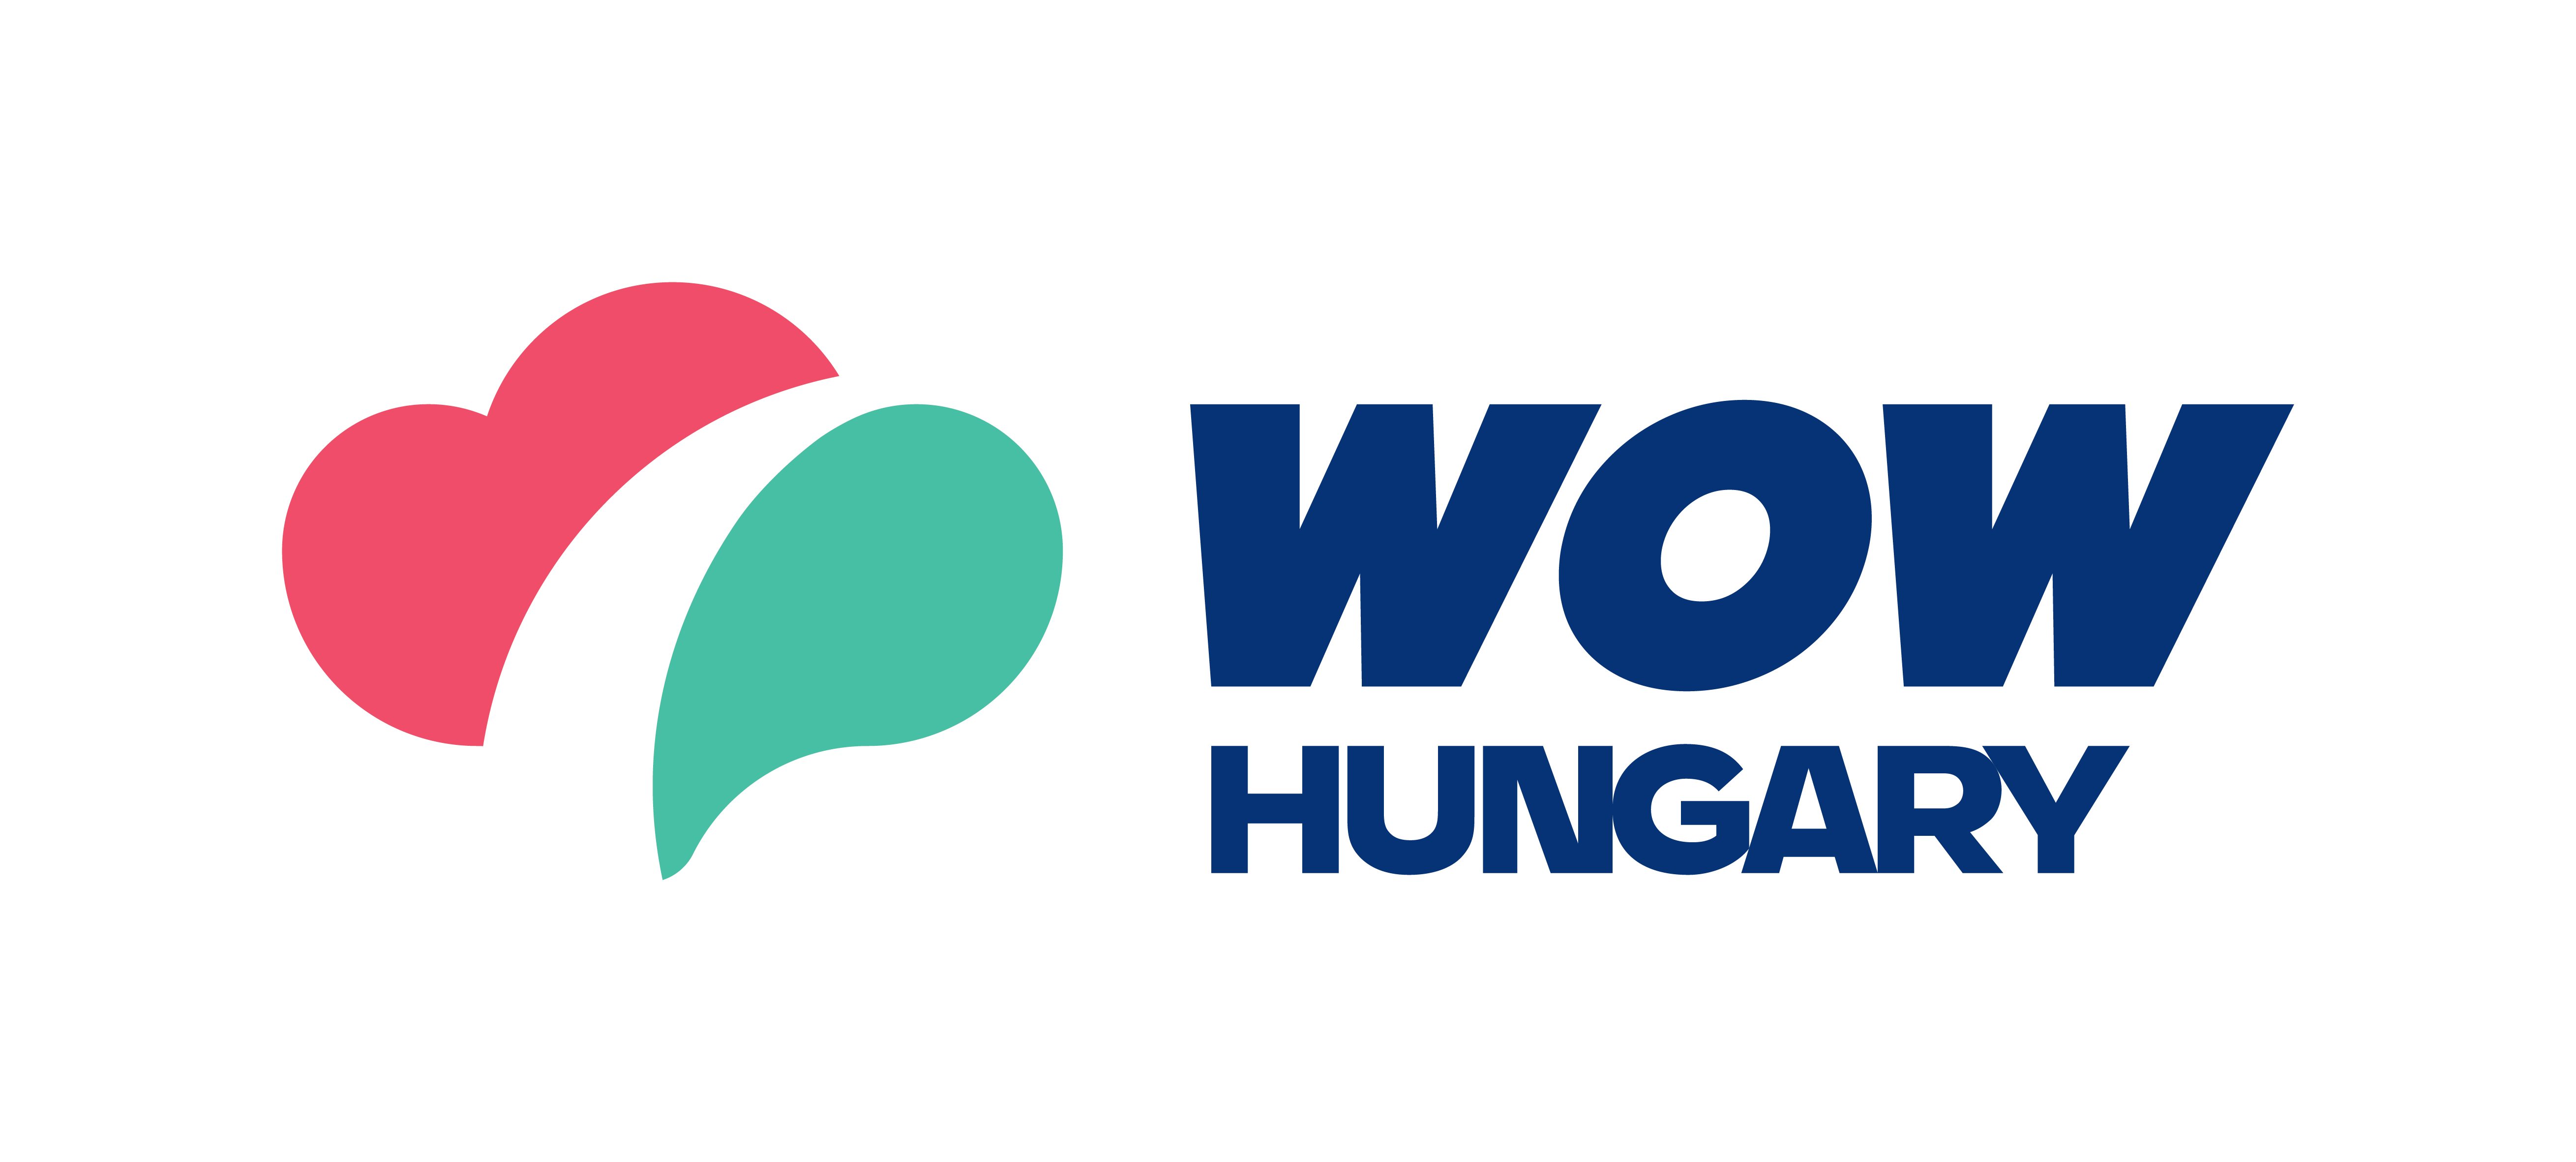 匈牙利国家旅游局